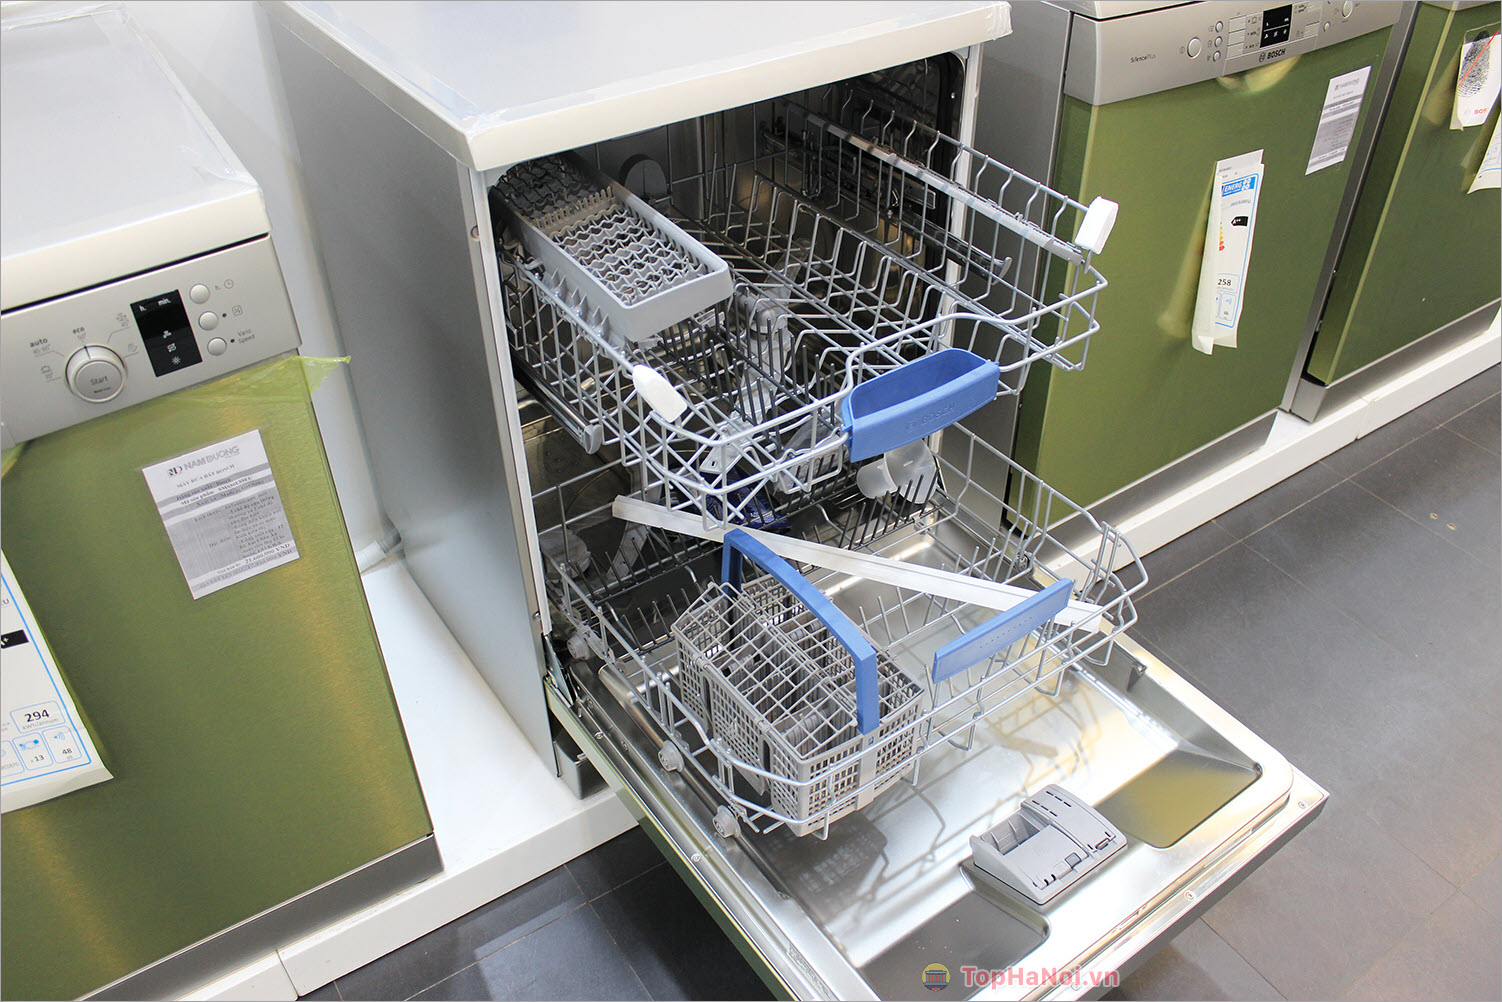 Nguyễn Vinh Bosch – Chuyên sửa máy rửa bát, bếp từ Bosch